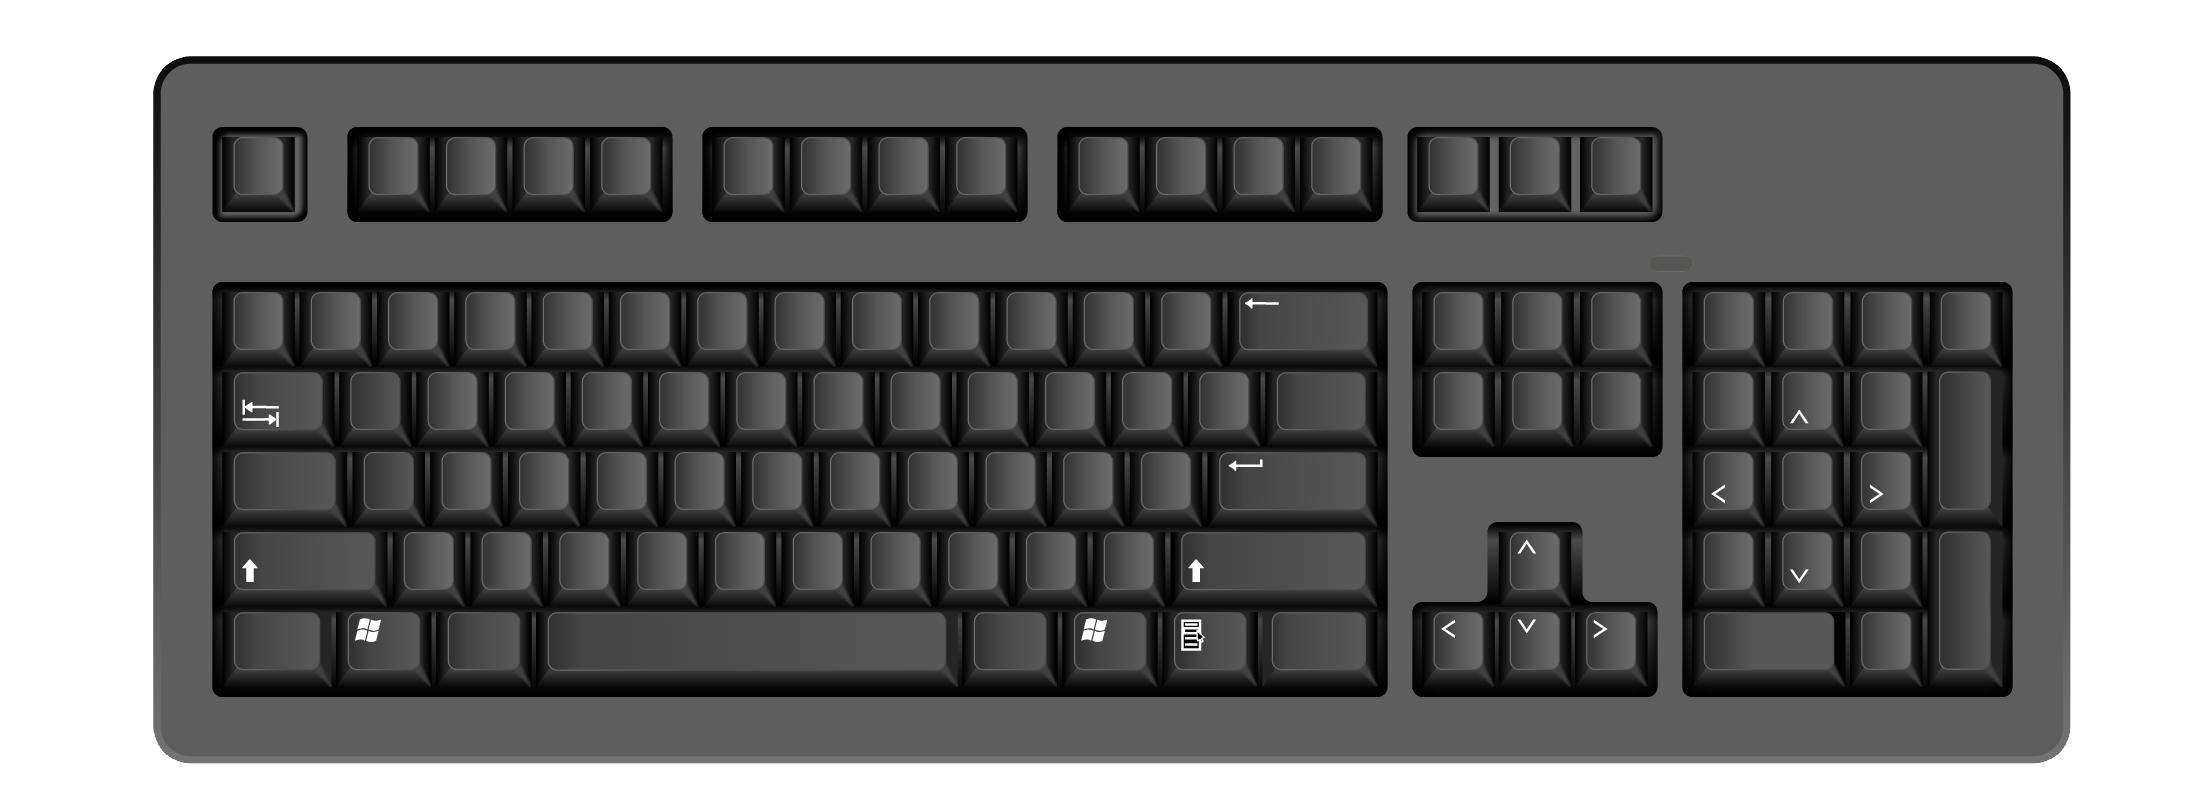 Показать нажимаемые клавиши. Клавиша Numpad 1. Numpad 1 на клавиатуре. Контрол шифт на клавиатуре. Numpad 5 на клавиатуре.